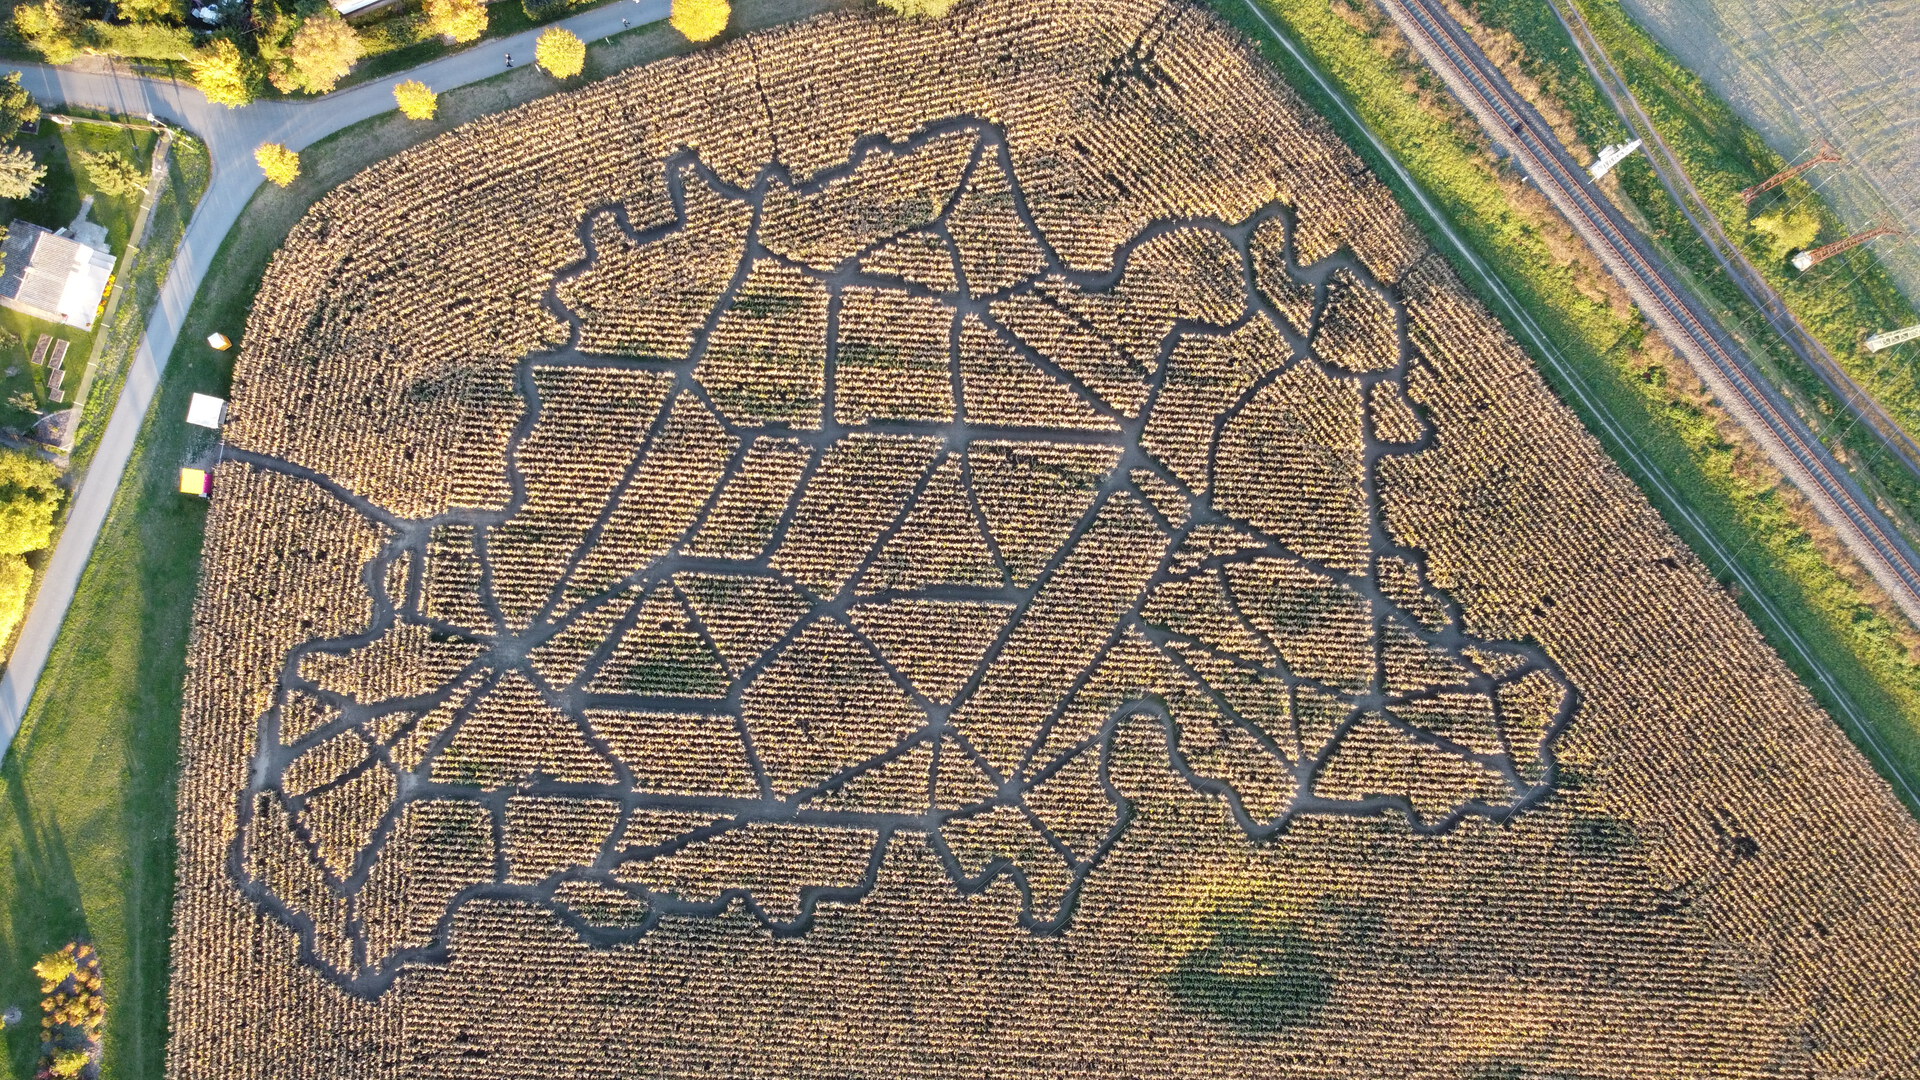 Kukuricne bludiste v Olomouci - mapa Belgie